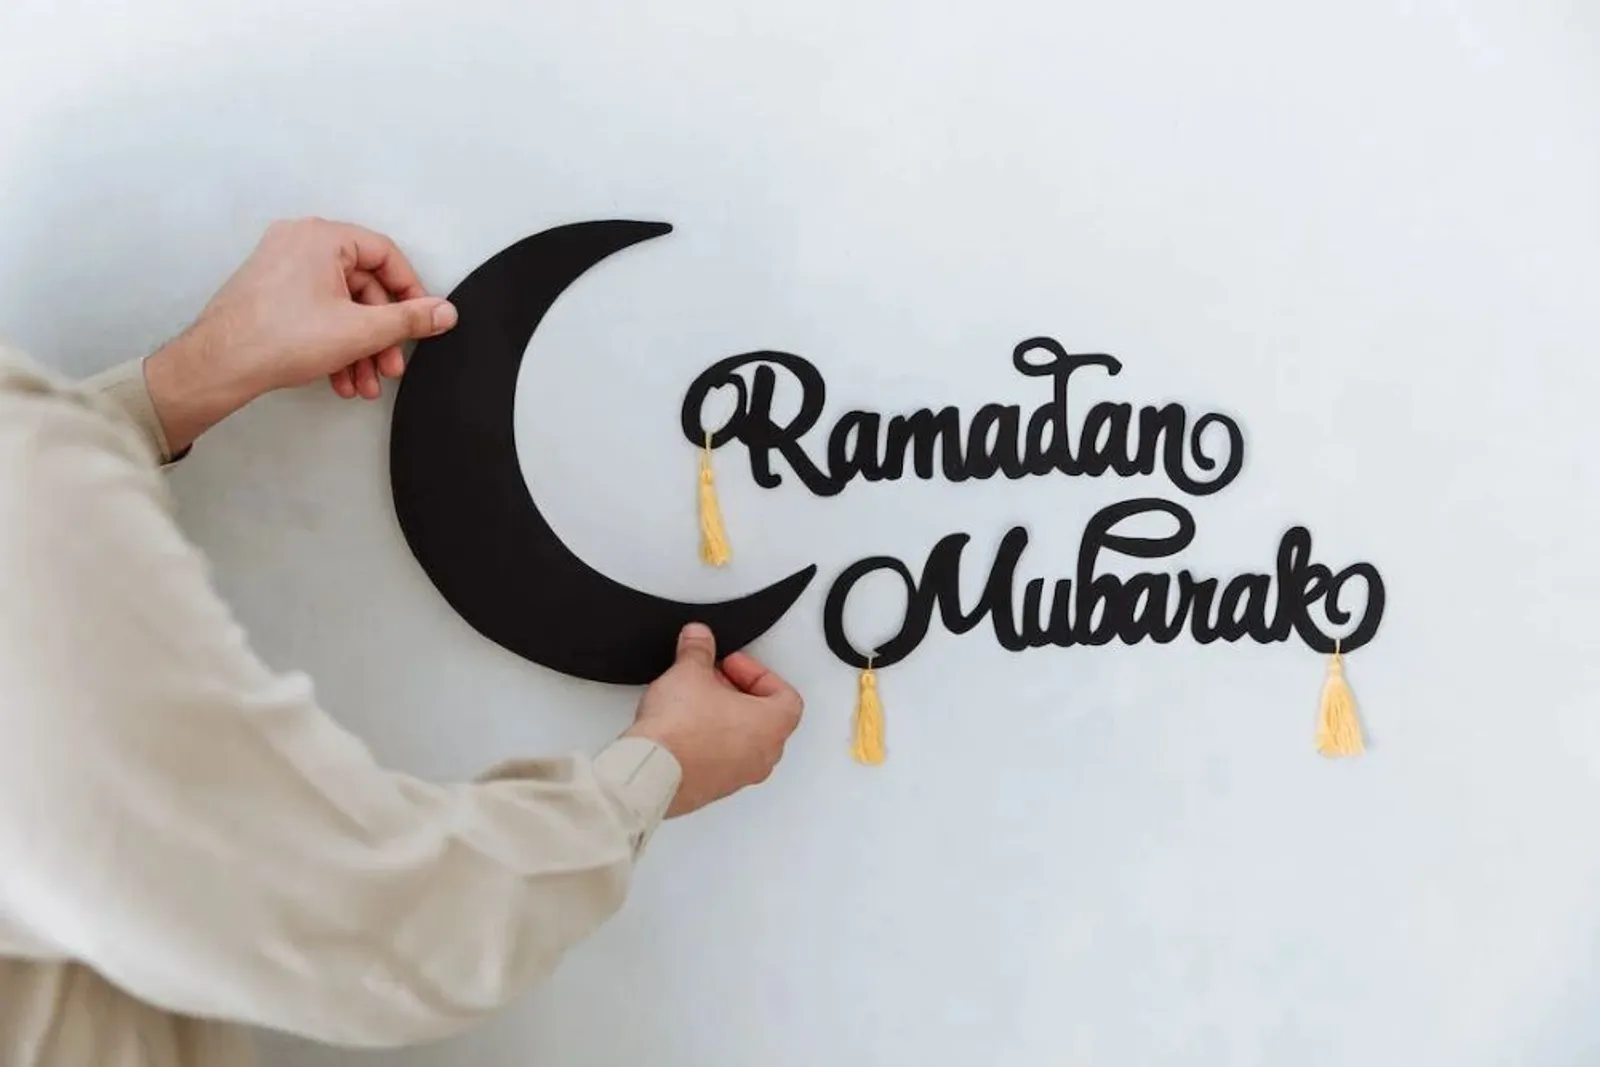 Ramadan Makin Produktif, Ini 7 Ide Kegiatan Mengisi Waktu Saat Puasa